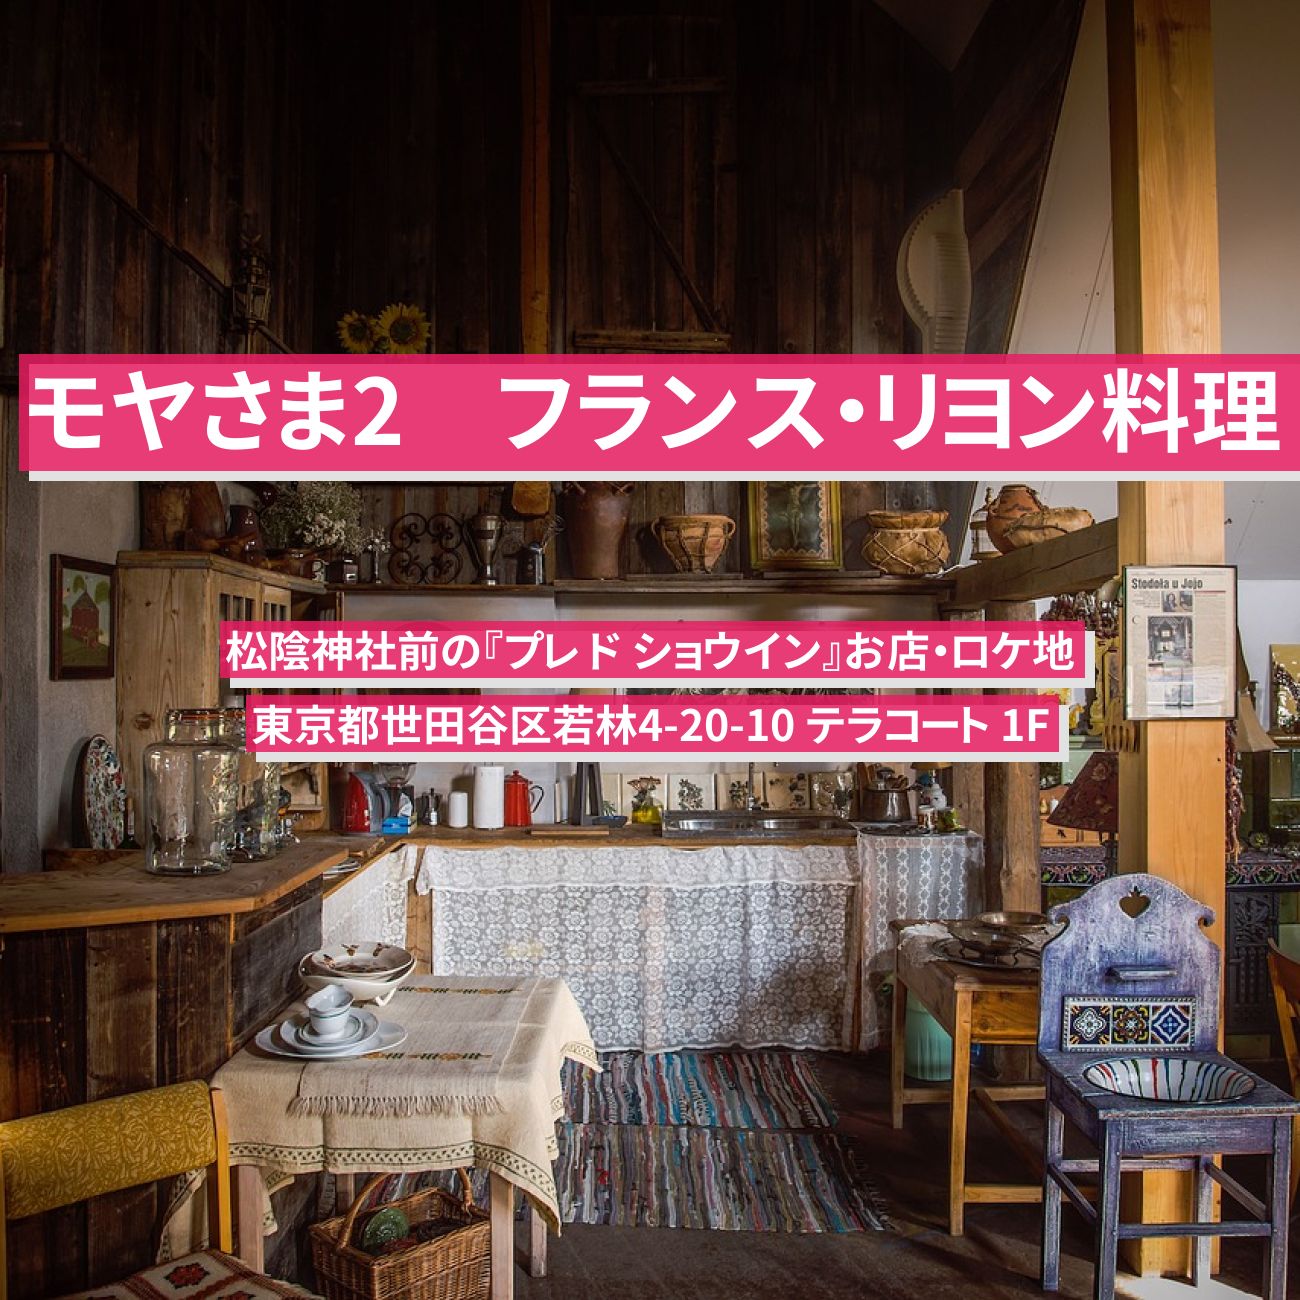 【モヤさま2】フランス・リヨン料理『プレ ド ショウイン』松陰神社前のお店・ロケ地